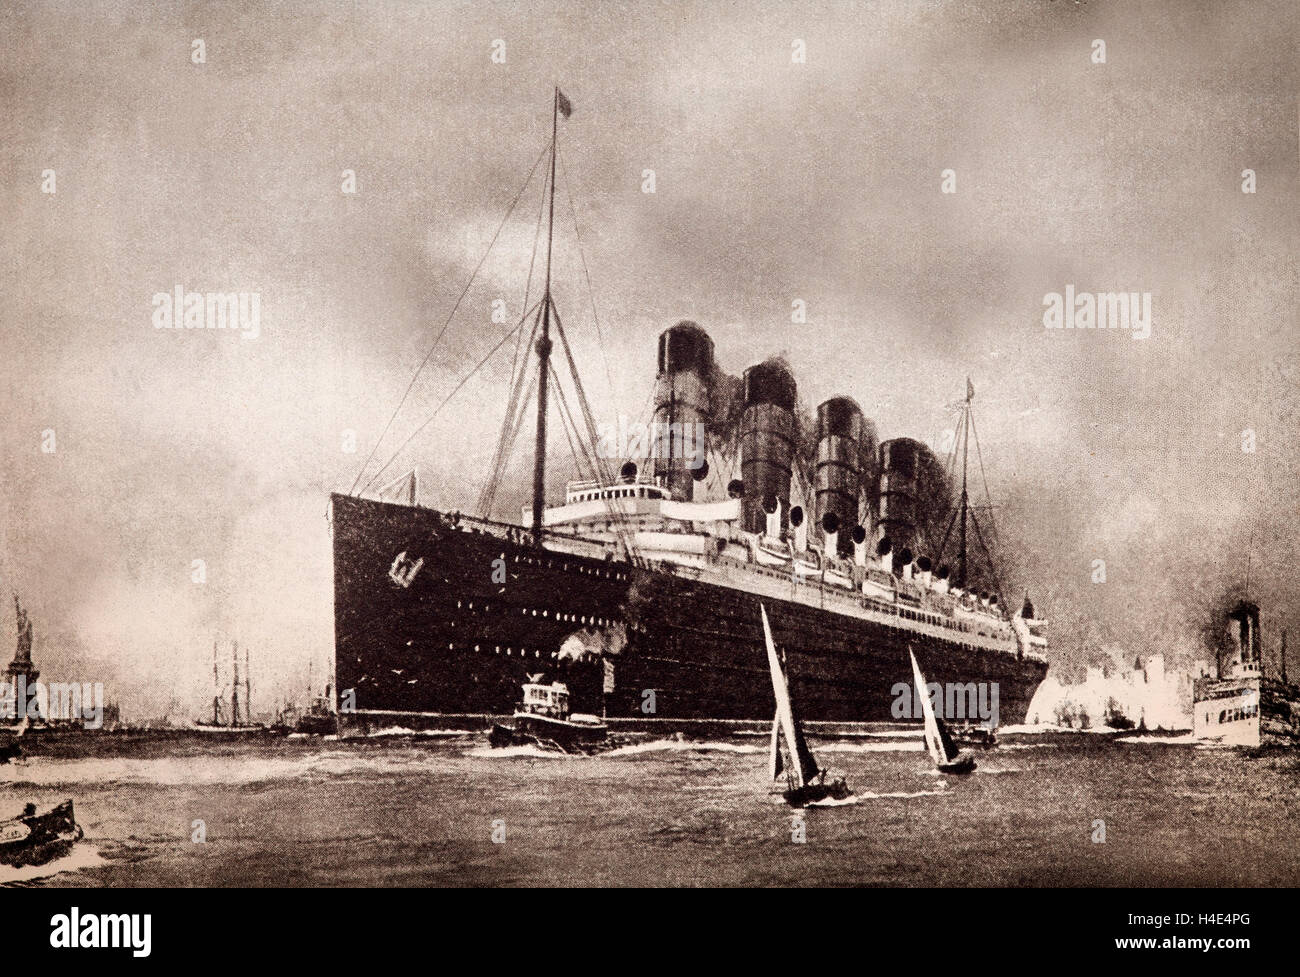 La Cunard Liner RMS Lusitania a été brièvement le plus grand navire à passagers. Il a été coulé par un sous-marin allemand au large de la côte de l'Irlande du sud, le 7 mai 1915, provoquant un tollé diplomatique majeur qui a fait beaucoup pour amener les États-Unis dans la guerre. Banque D'Images